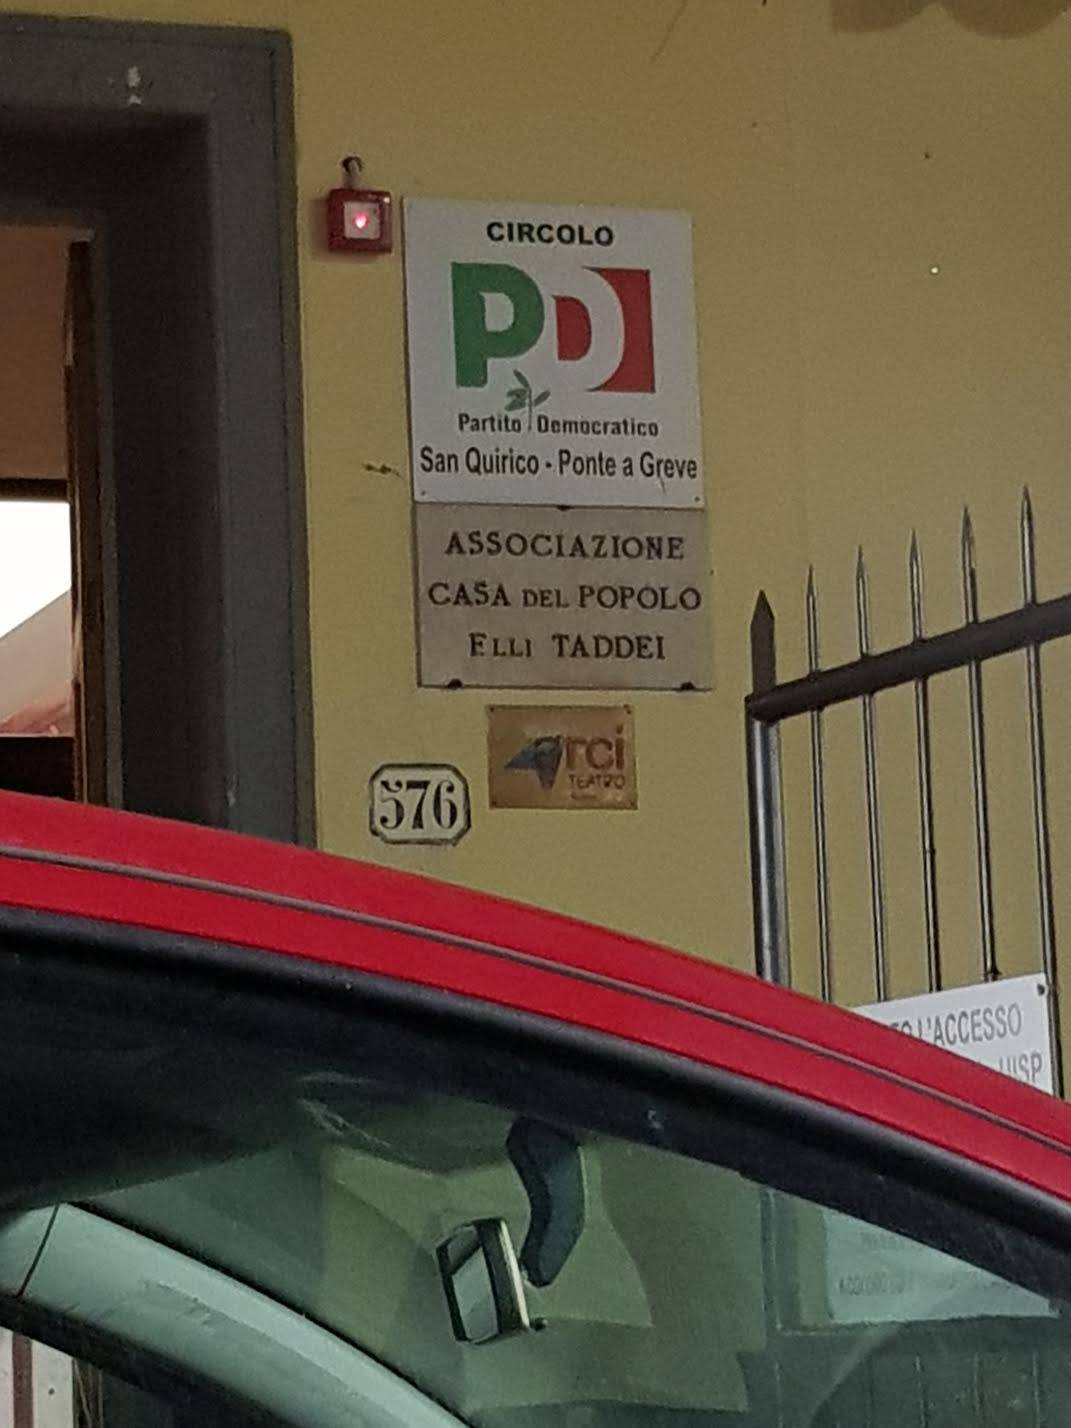 A Firenze il Pd amplia le proprie sedi con i soldi dei cittadini 